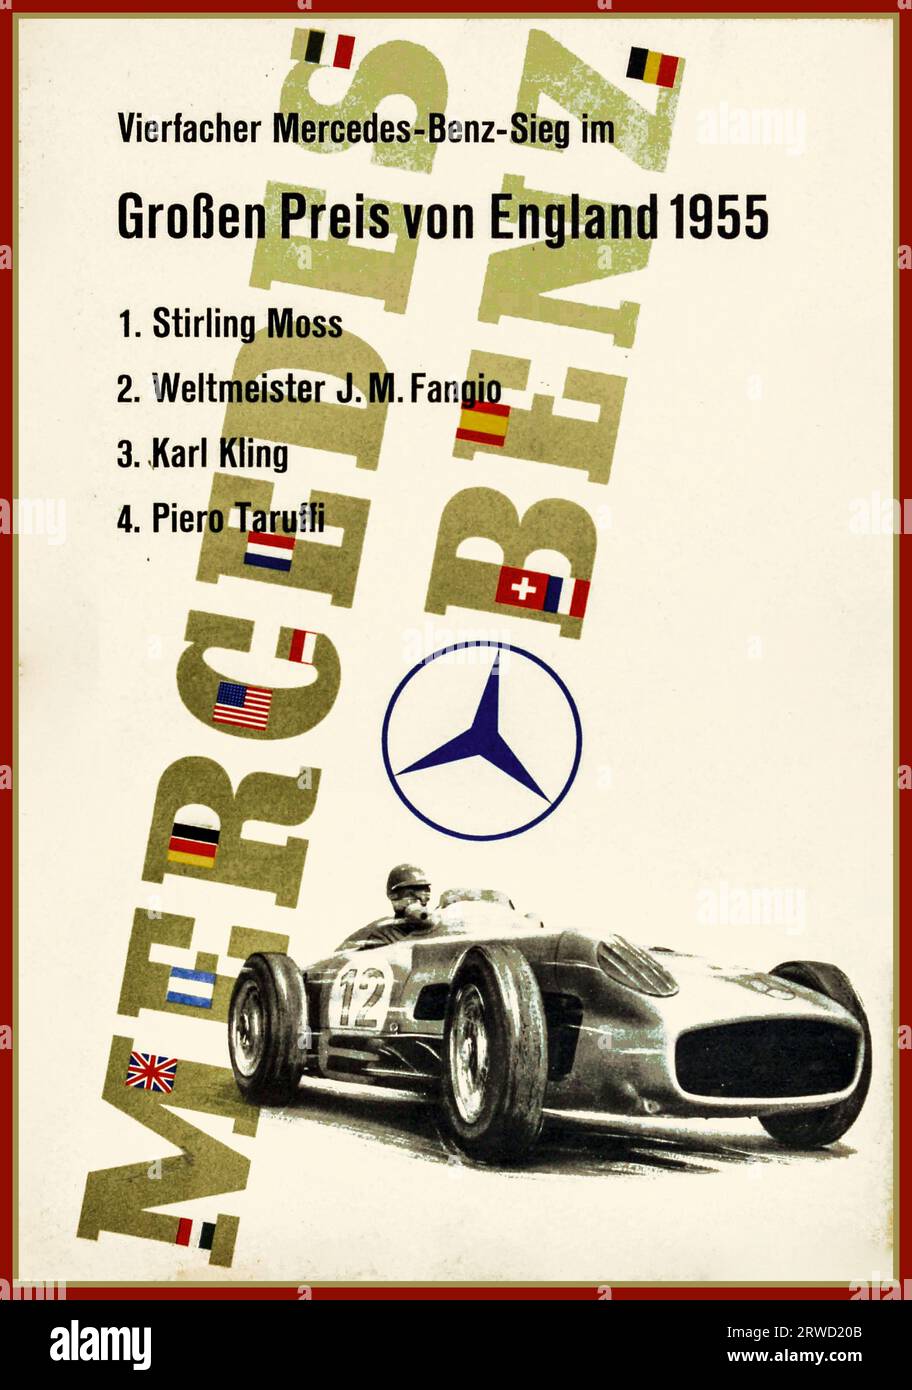 GRAND-PRIX-POSTER MERCEDES BENZ 1955 BRITISH GRAND PRIX FORMULA ONE Vintage 1955-Poster von Mercedes Benz zur Feier der vier Siege seiner Fahrer beim Grand Prix Vierfacher Mercedes-Benz-Sieg im Grossen Preis von England 1955 1. Stirling Moss (* 1929) gewann sein erstes Formel-1-Rennen; 2. Juan Manuel Fangio (1911-1995); 3. Karl Kling (1910-2003) und 4. Piero Taruffi (1906–1988) mit einem dynamischen Design, das ein schwarz-weißes Bild eines Mercedes Benz W196 Sportwagens der Nummer 12 zeigt, der unter dem britischen Grand Prix Formel-1-Rennen von Mercedes logo1955 W rast Stockfoto